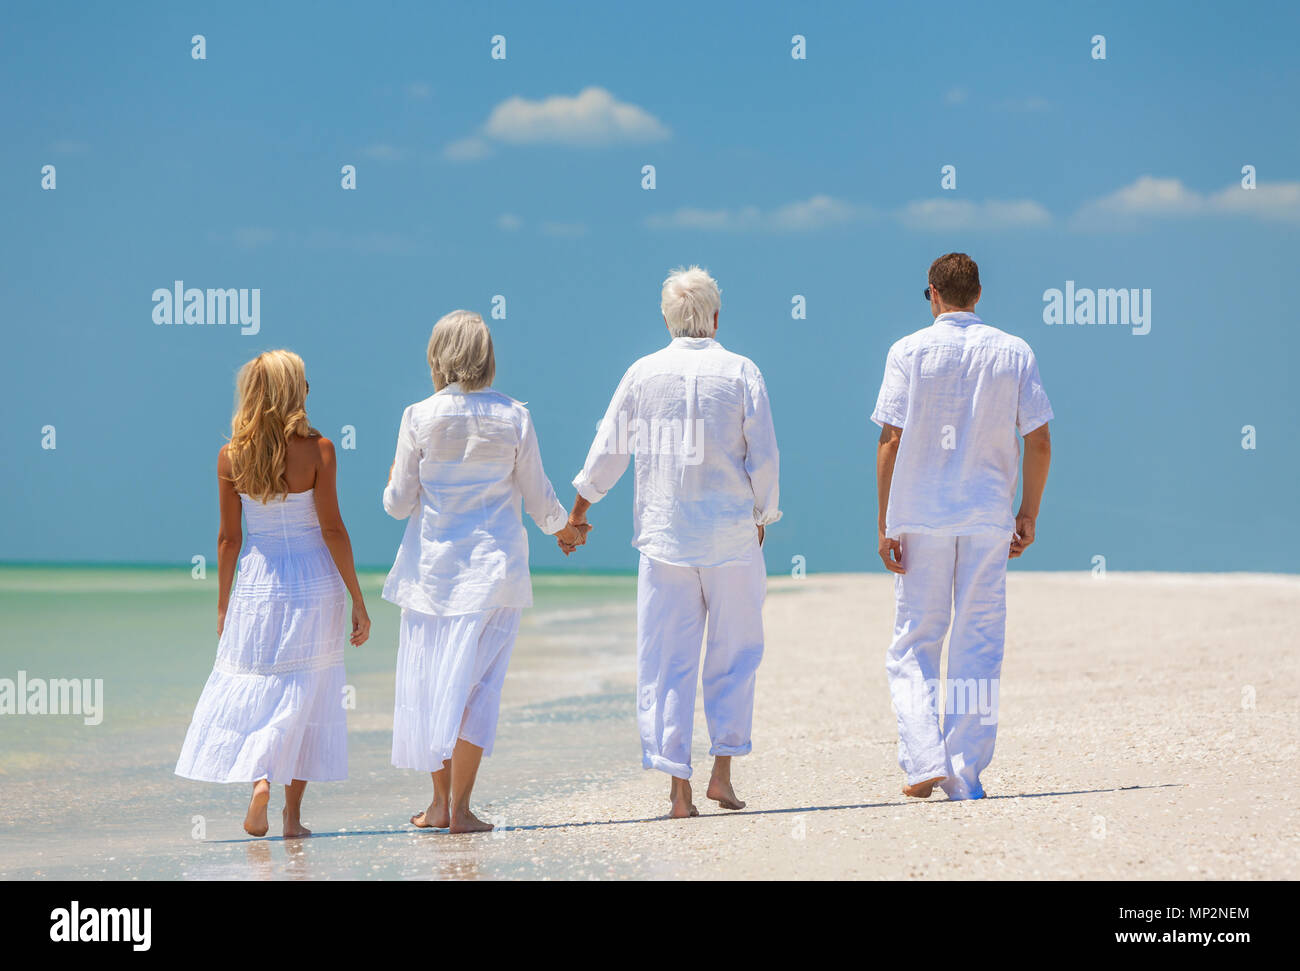 Vue arrière de quatre personnes, deux personnes âgées, des couples ou des générations, se tenir la main, marcher sur une plage tropicale vide Banque D'Images